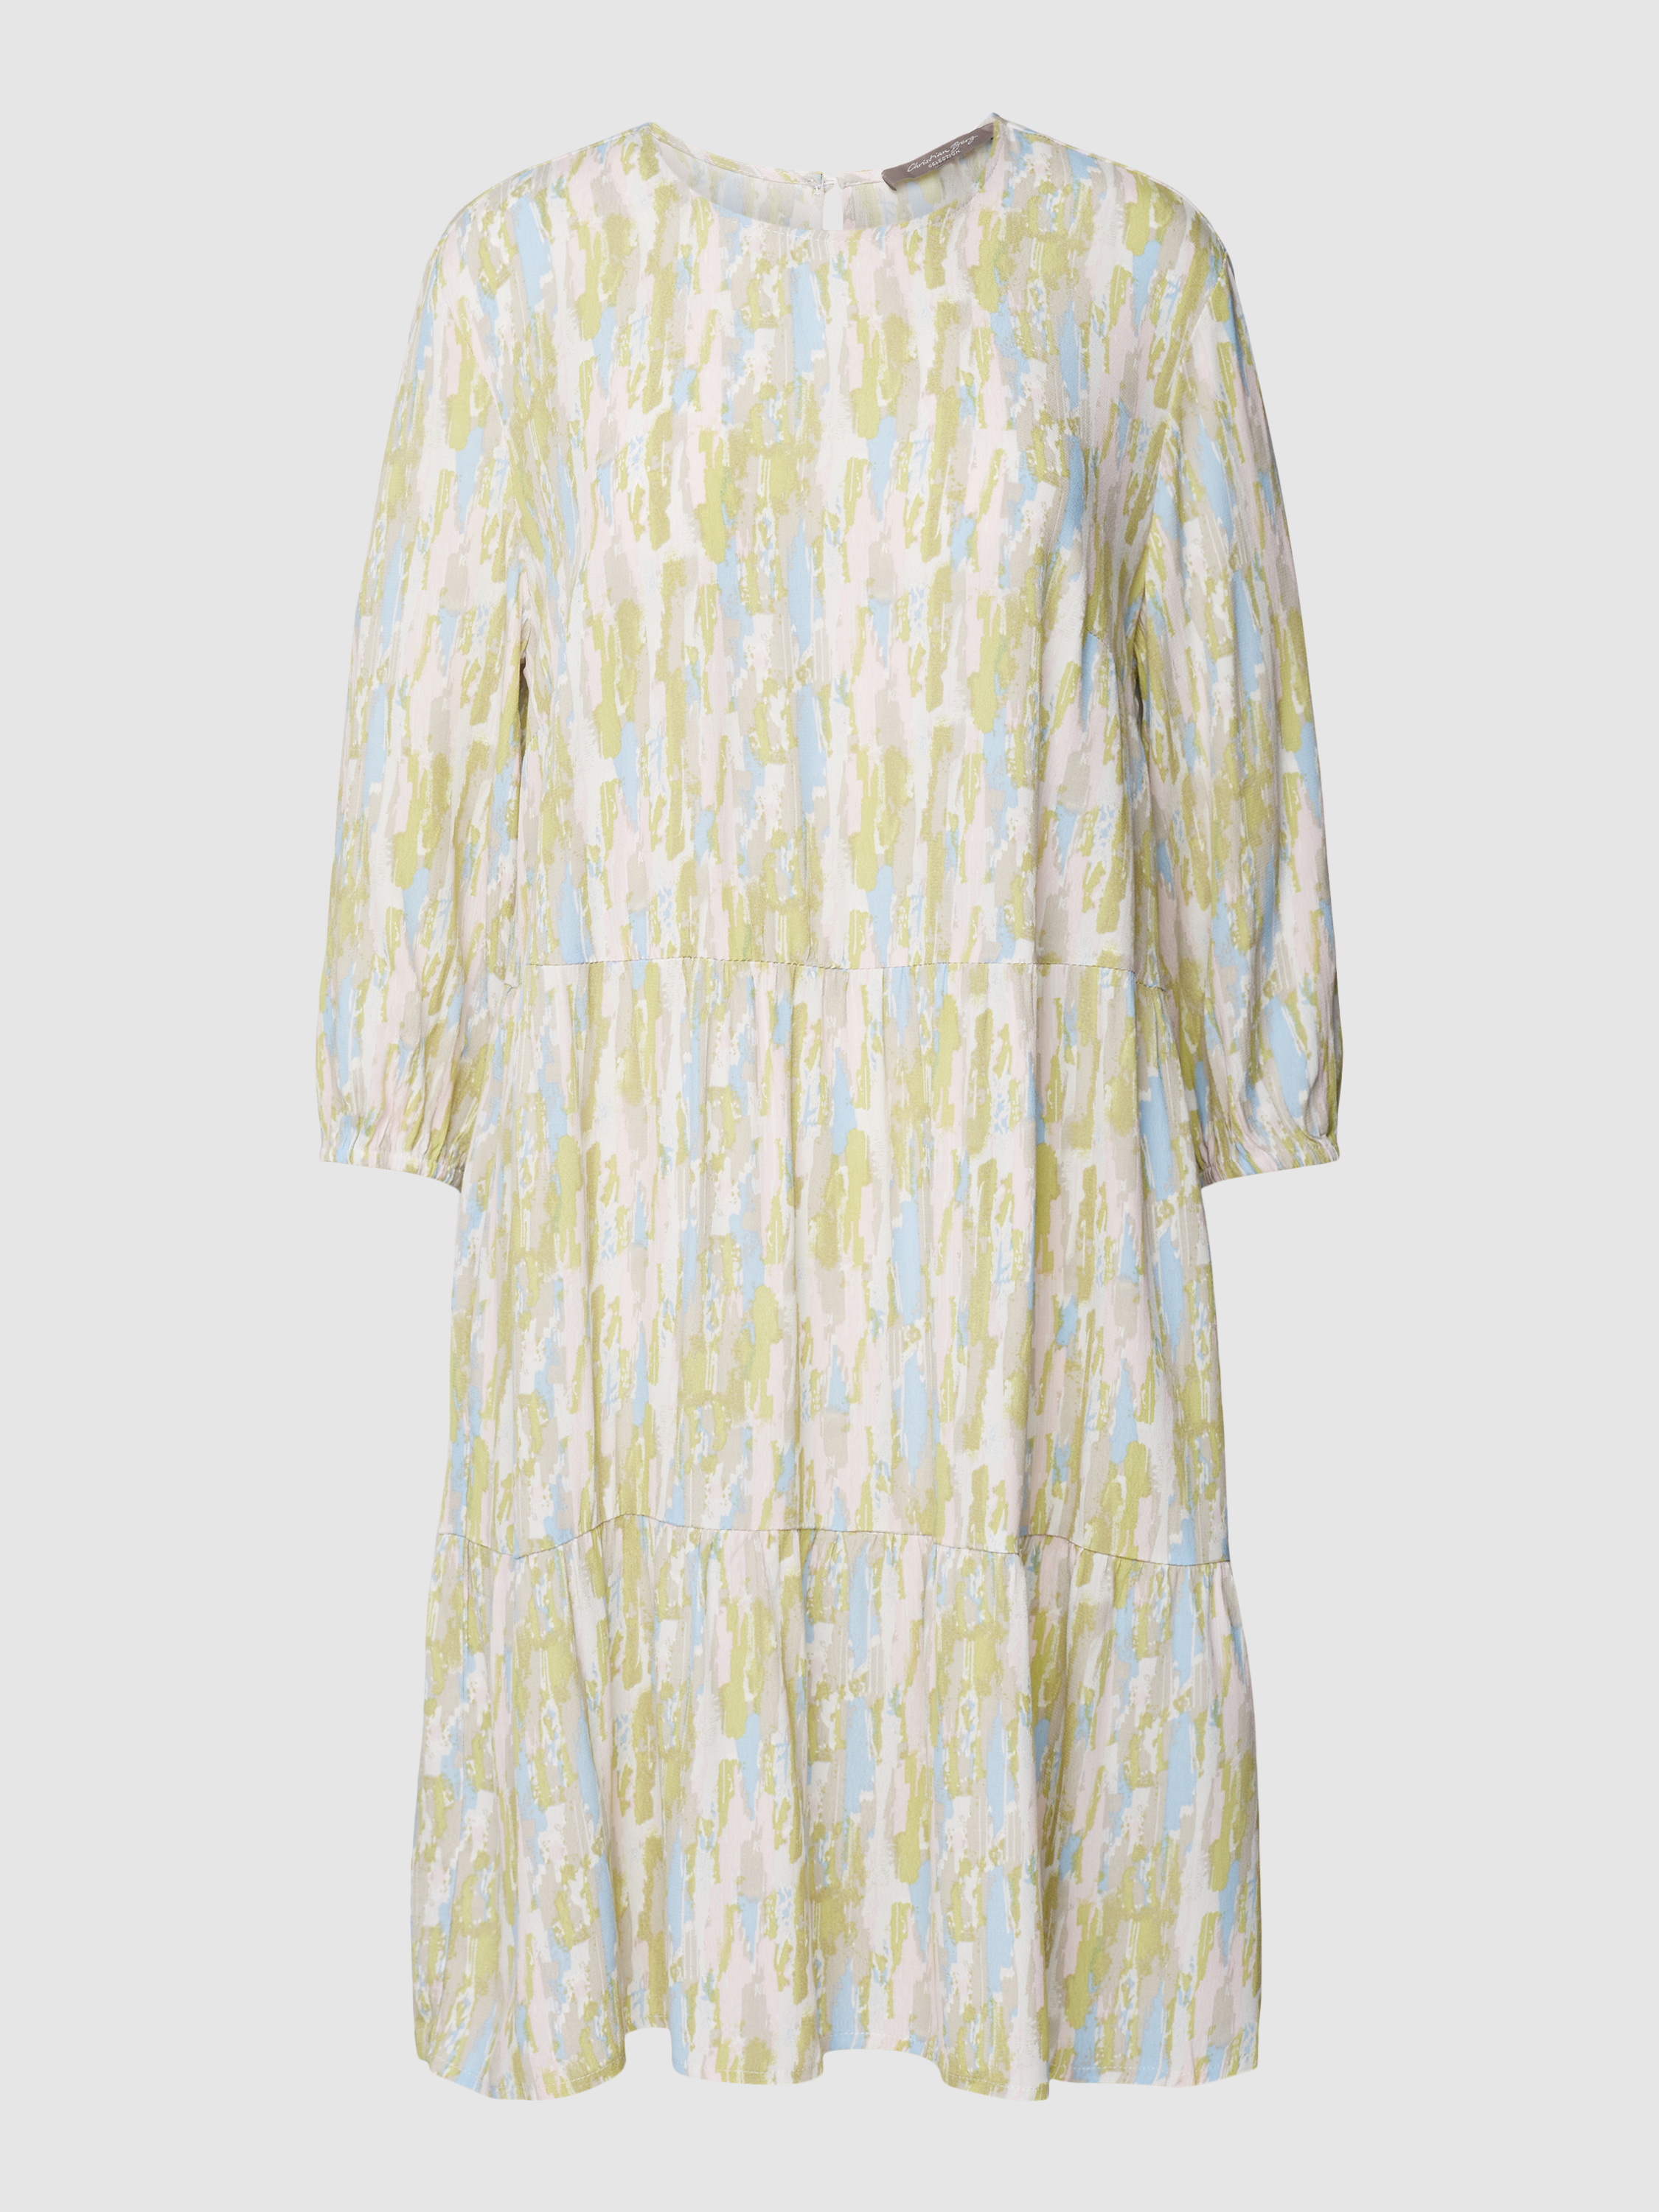 Платье женское Christian Berg Woman Selection 1781261 розовое 44 (доставка из-за рубежа)